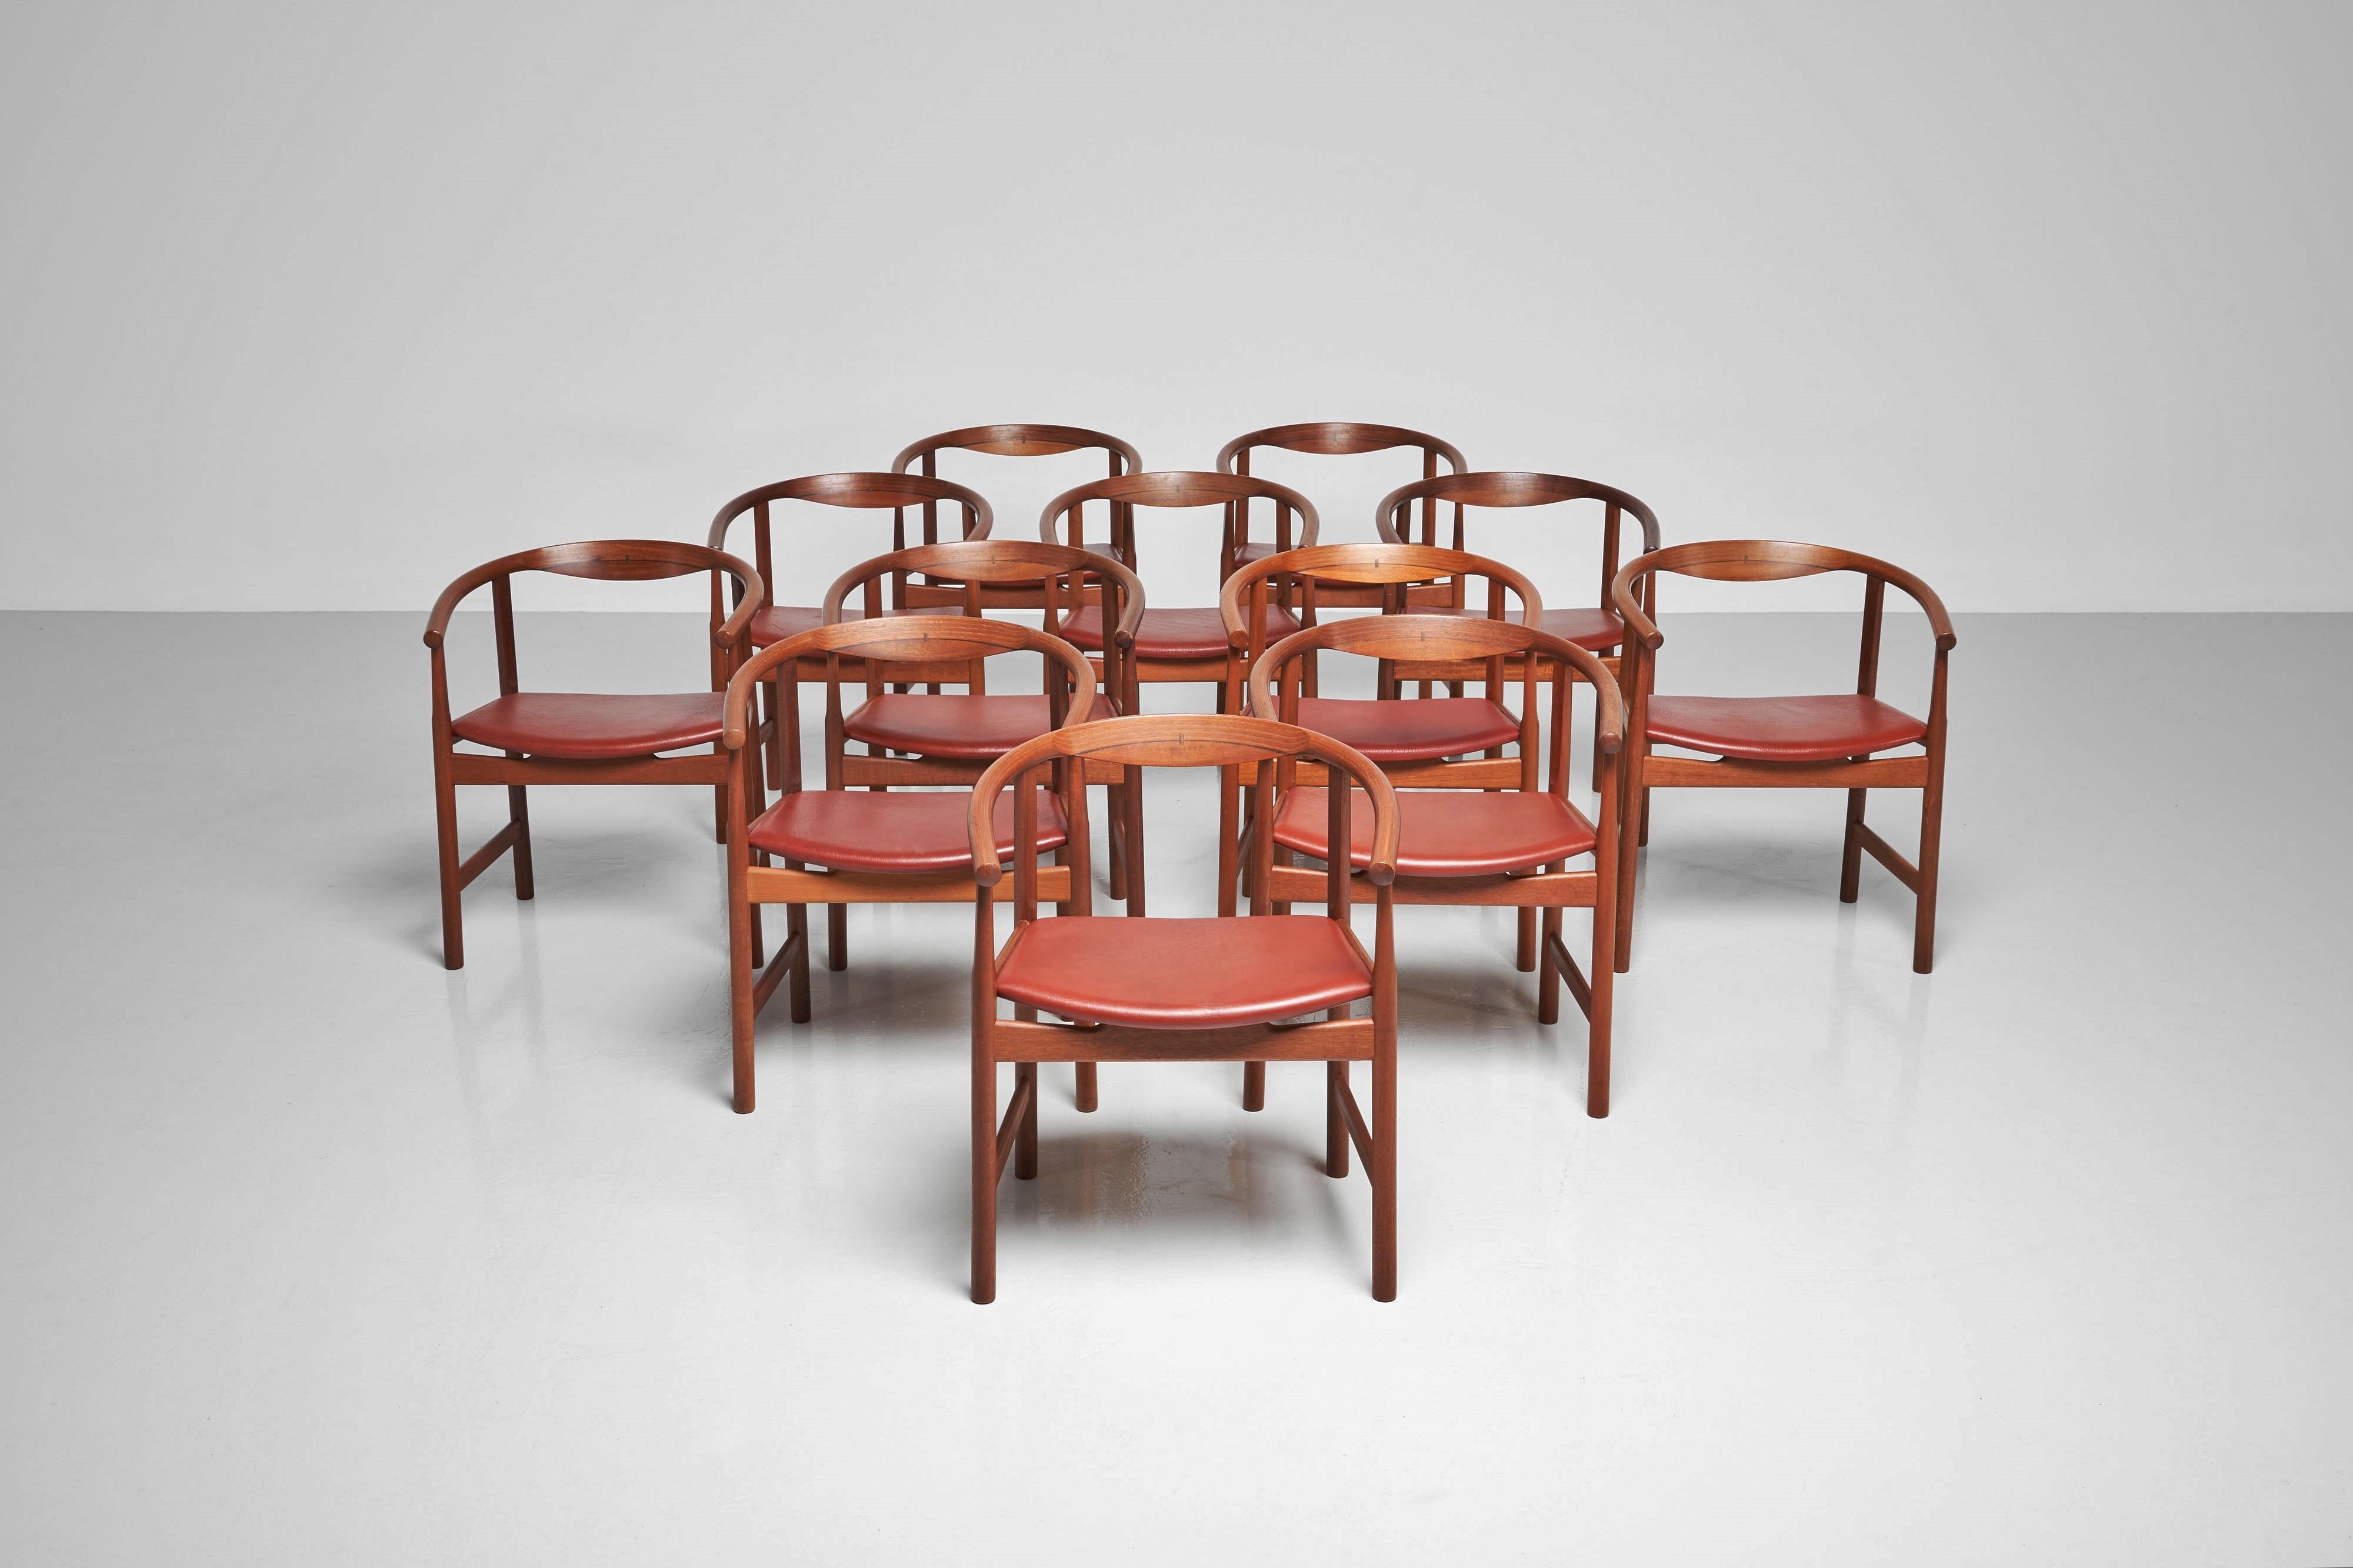 Chaises de salle à manger PP203 emblématiques de Hans J. Wegner, fabriquées par PP Møbler, Danemark, en 1969. Cet ensemble comprend 12 chaises extrêmement rares, ce qui en fait une trouvaille remarquable. Ces chaises témoignent des compétences